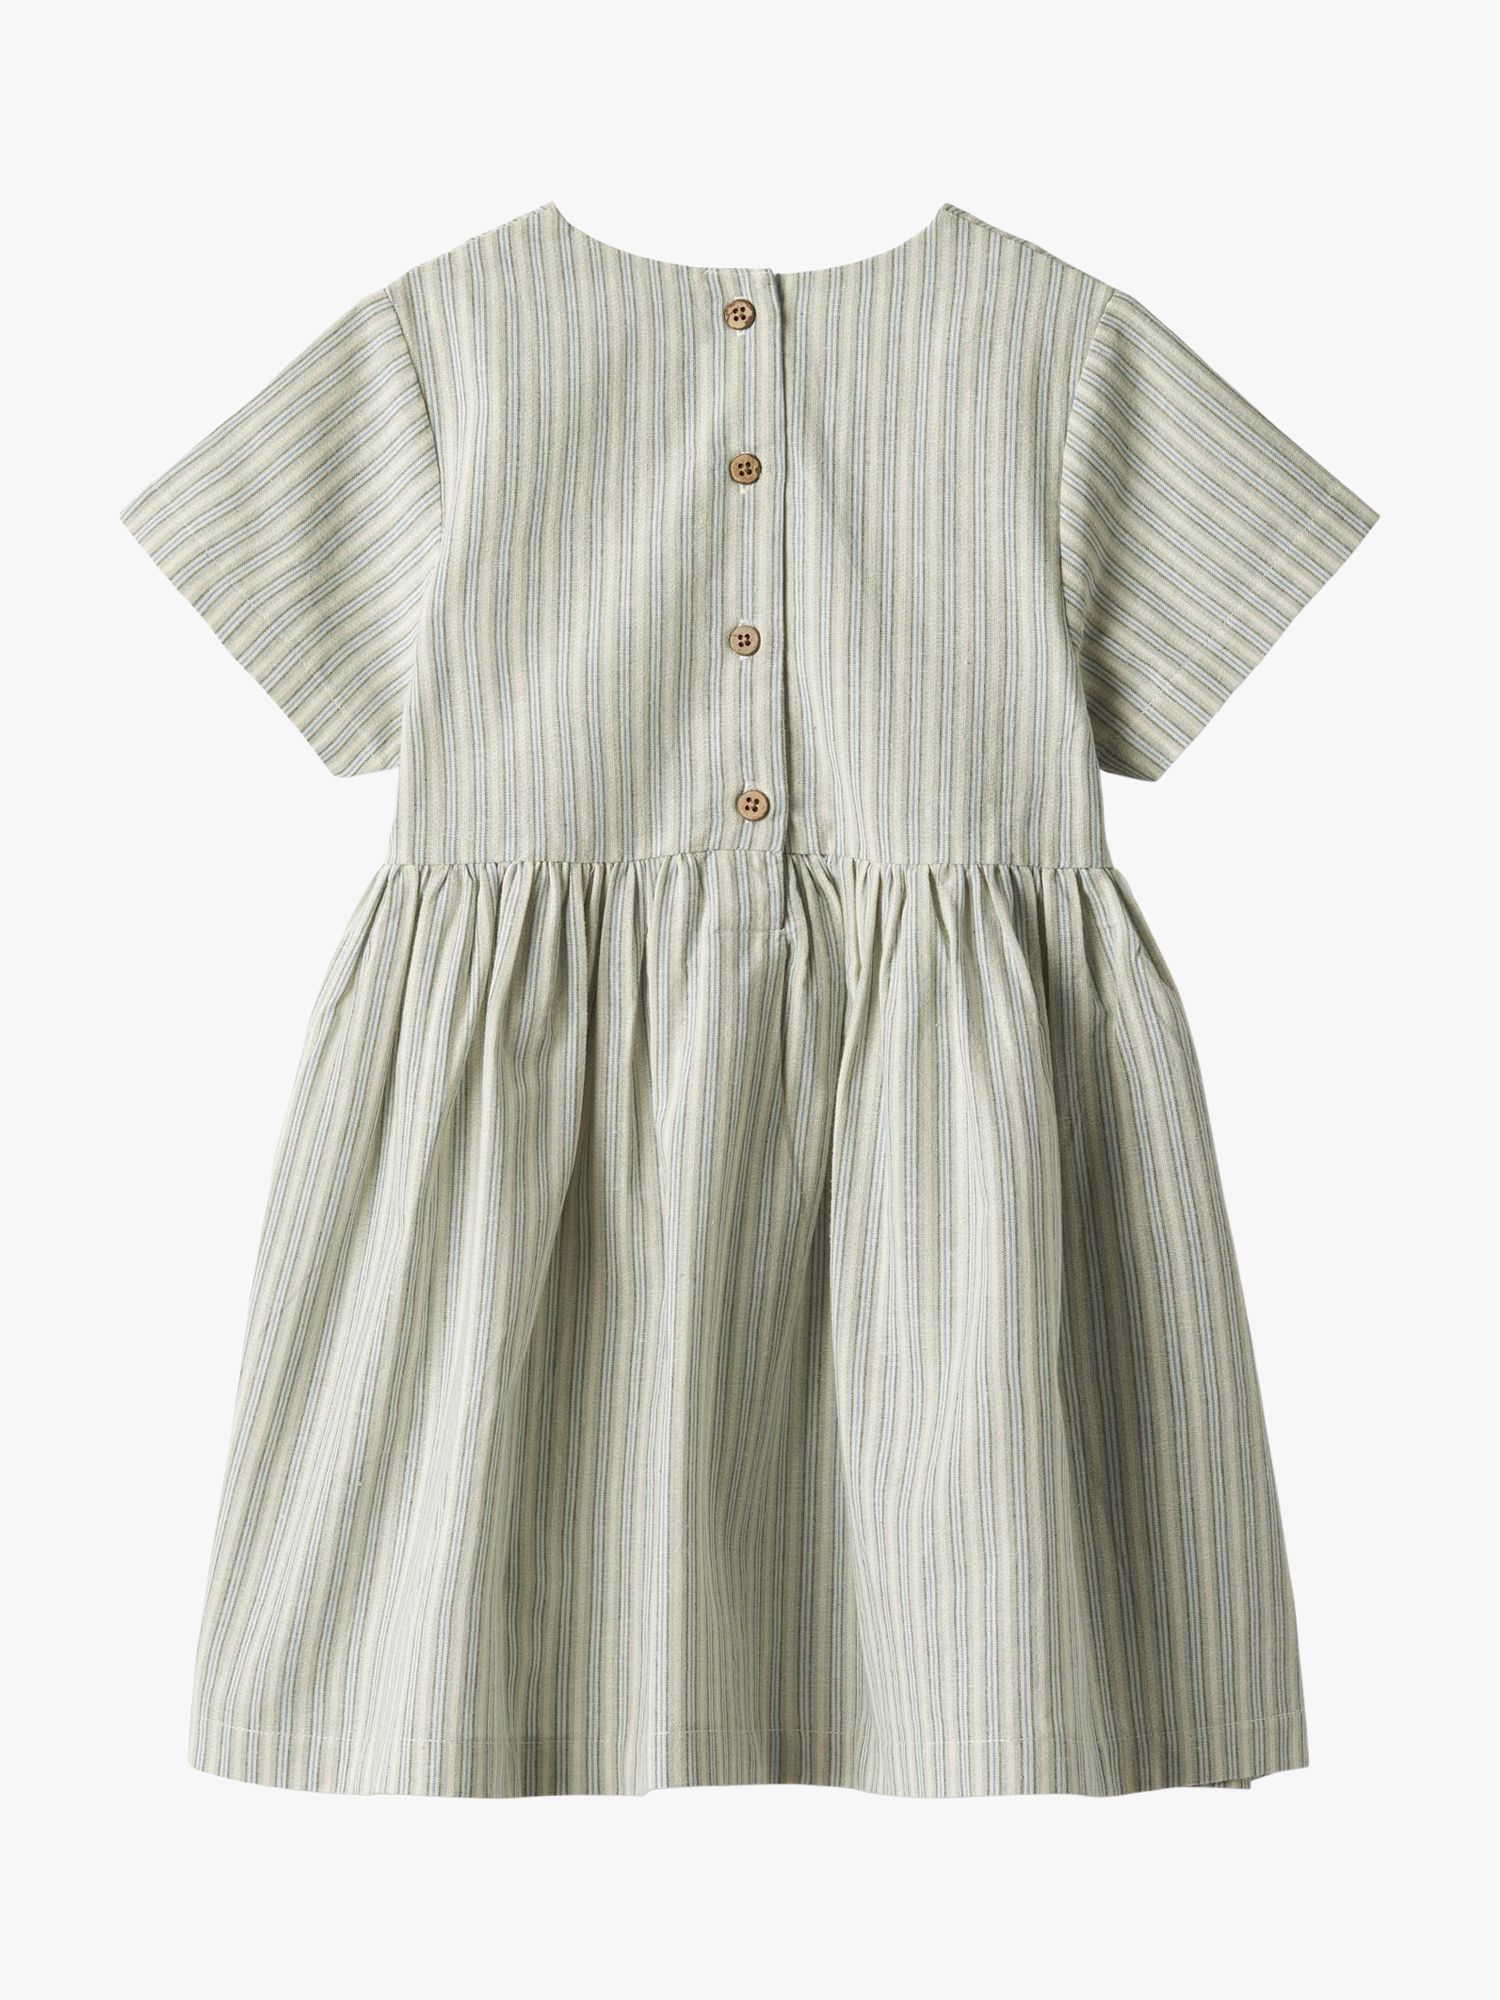 WHEAT Esmaralda Stripe Organic Cotton Dress, Green, 7 years